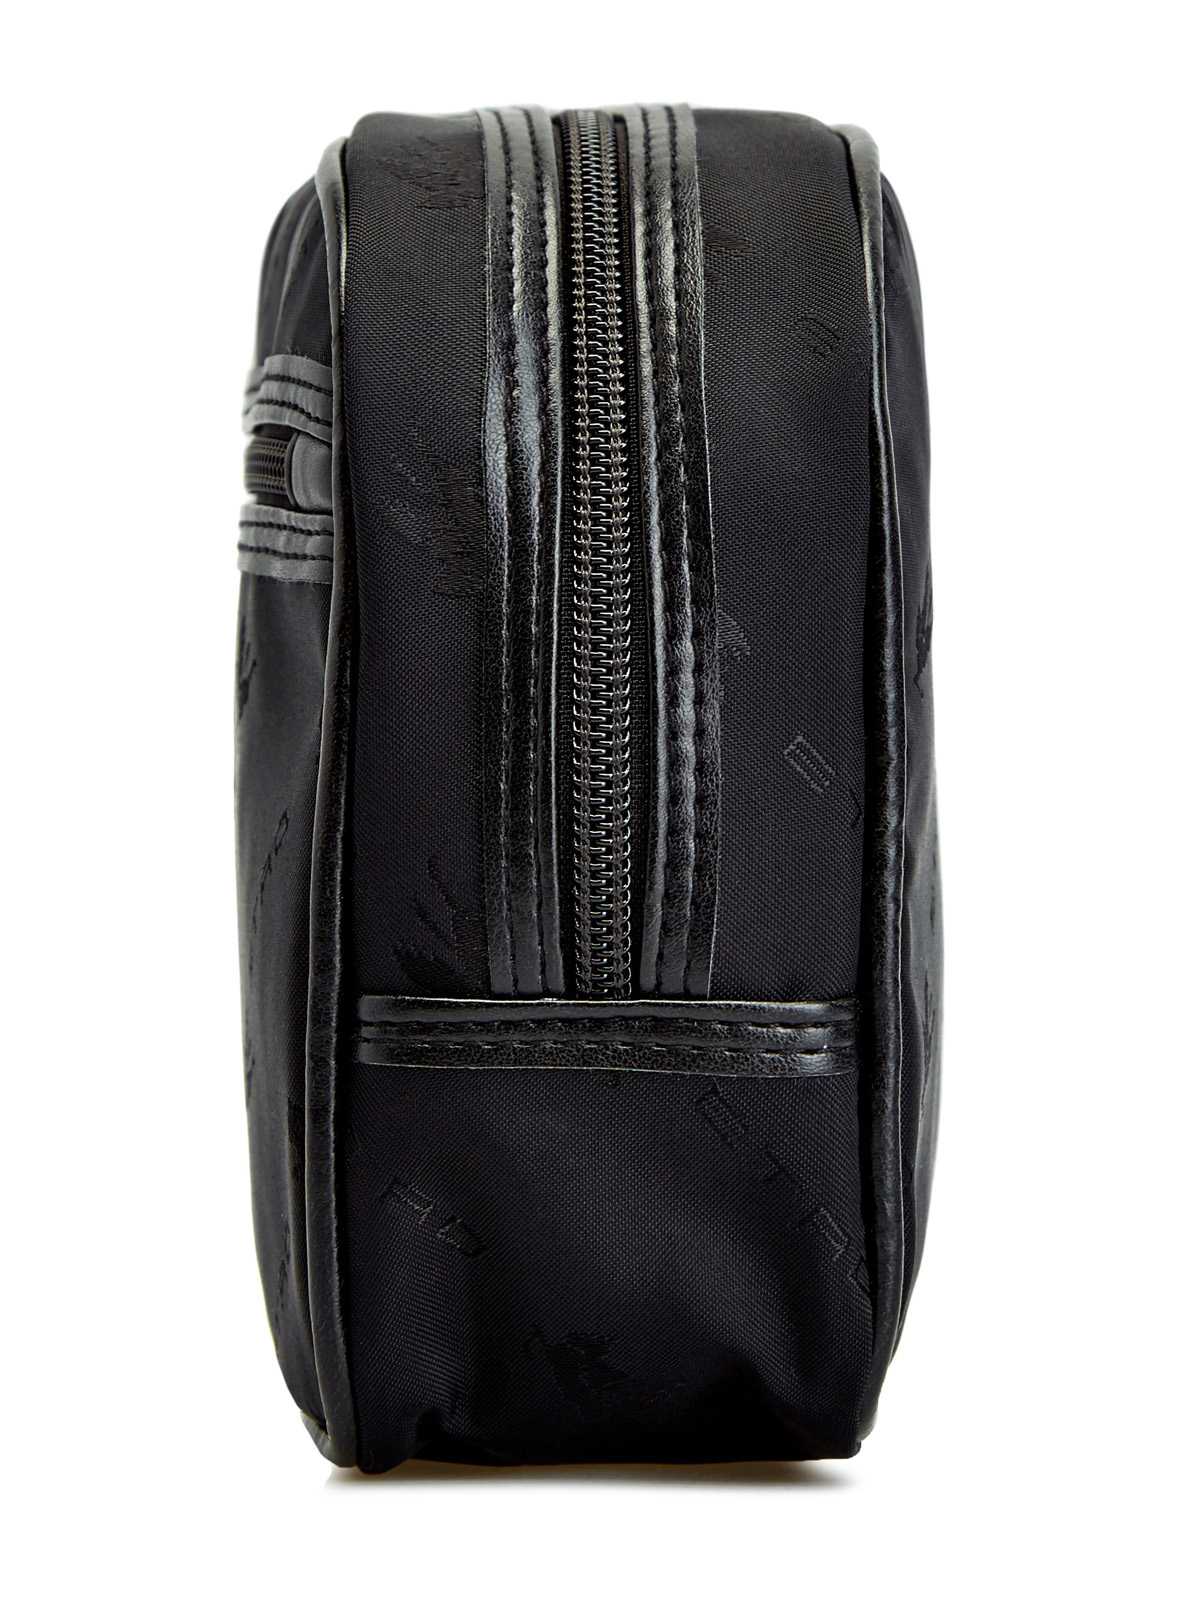 Компактный несессер из нейлона с фирменным декором ETRO, цвет черный, размер 37;40;41;38 - фото 3